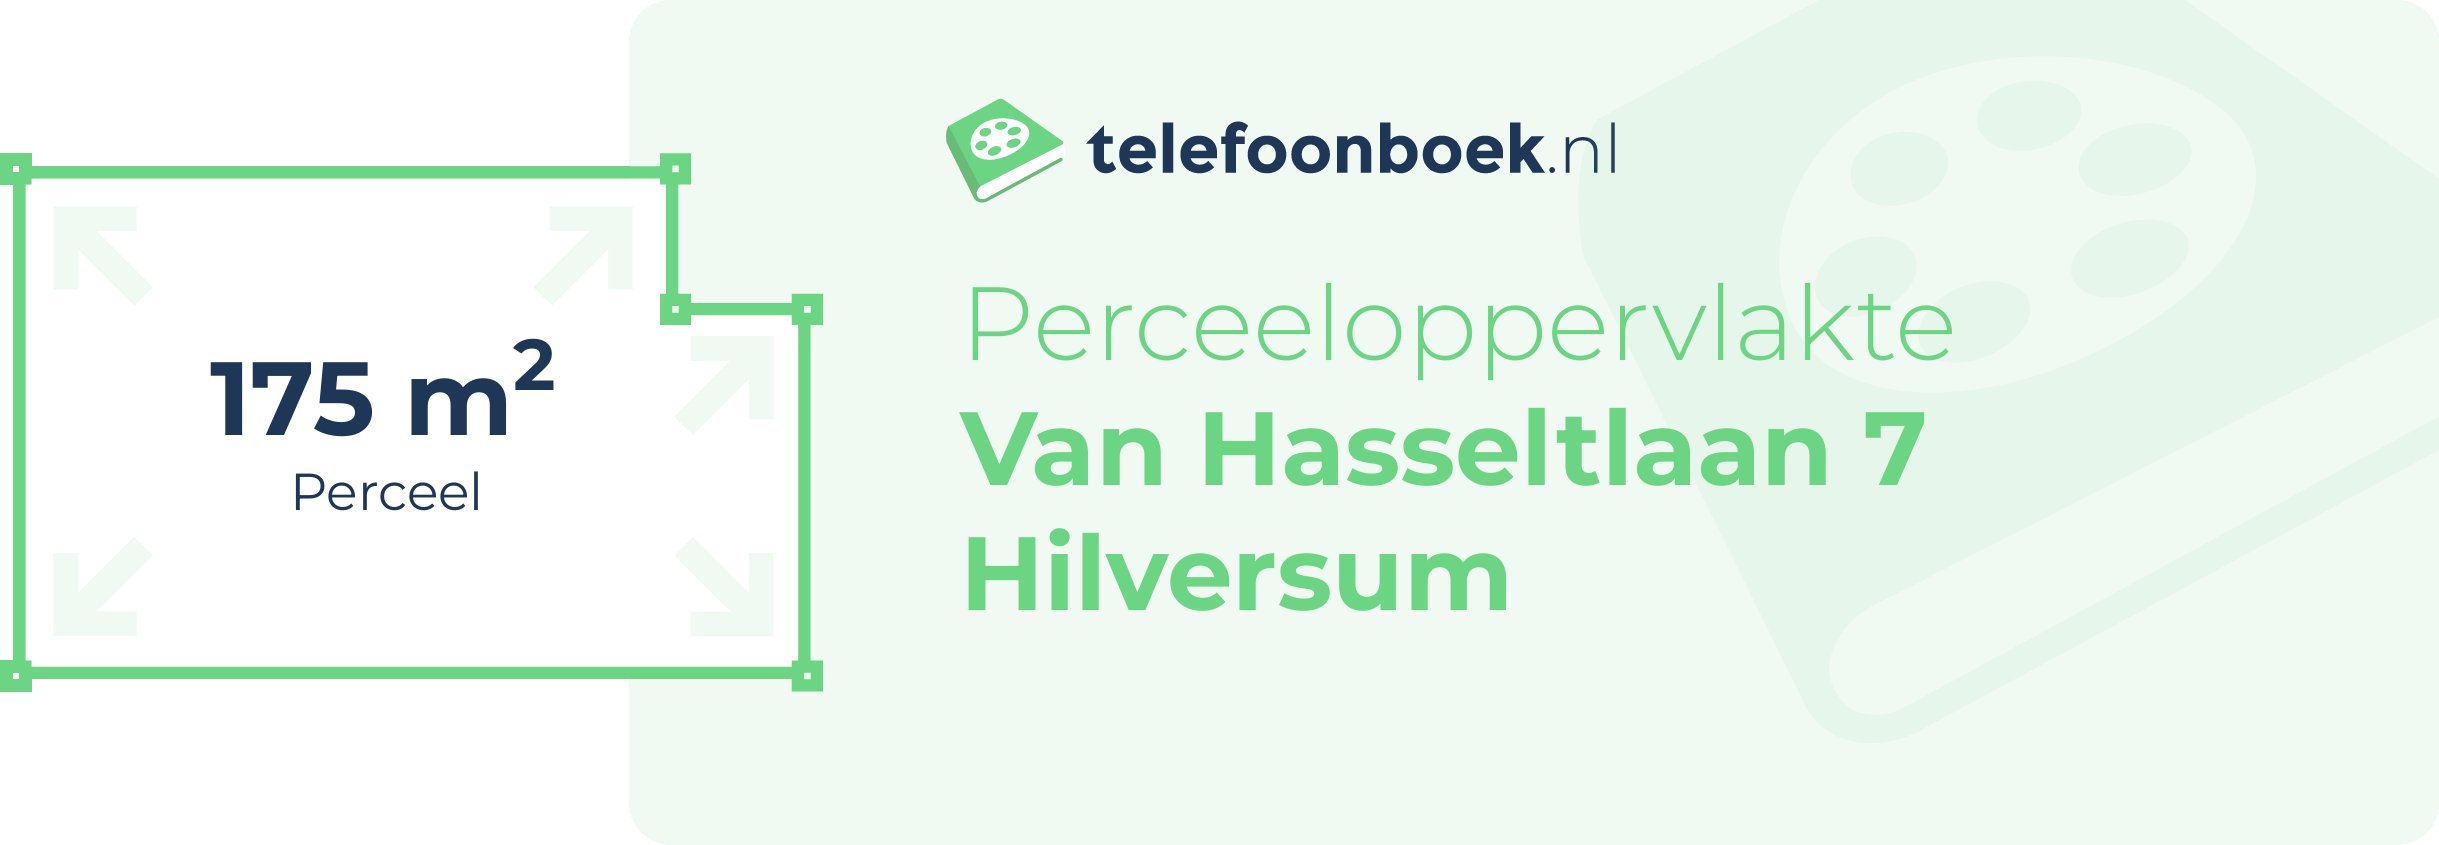 Perceeloppervlakte Van Hasseltlaan 7 Hilversum